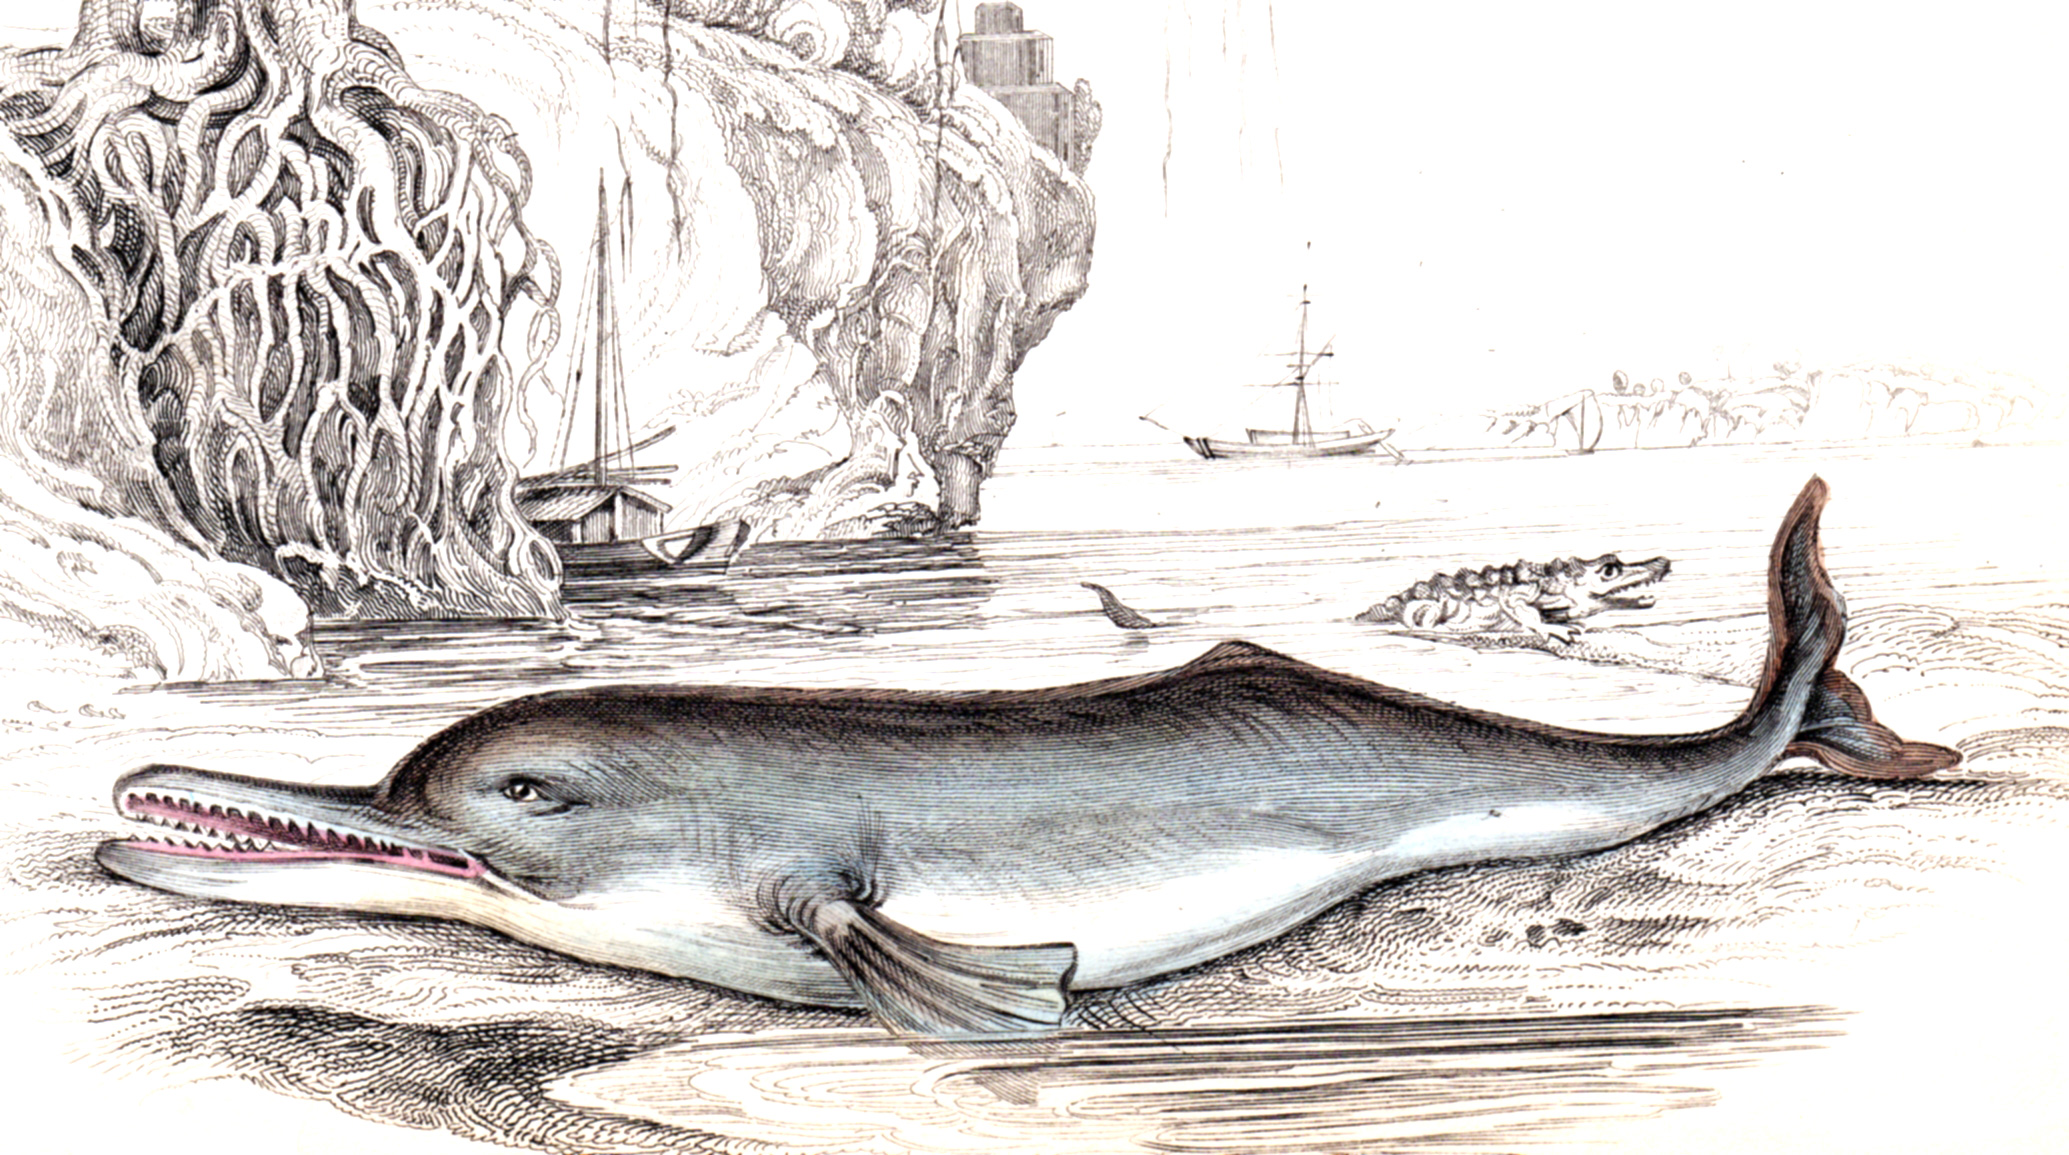 Jardine, Sir Wm / Lizars, Wm – Whales, Dolphins, Porpoises, etc.